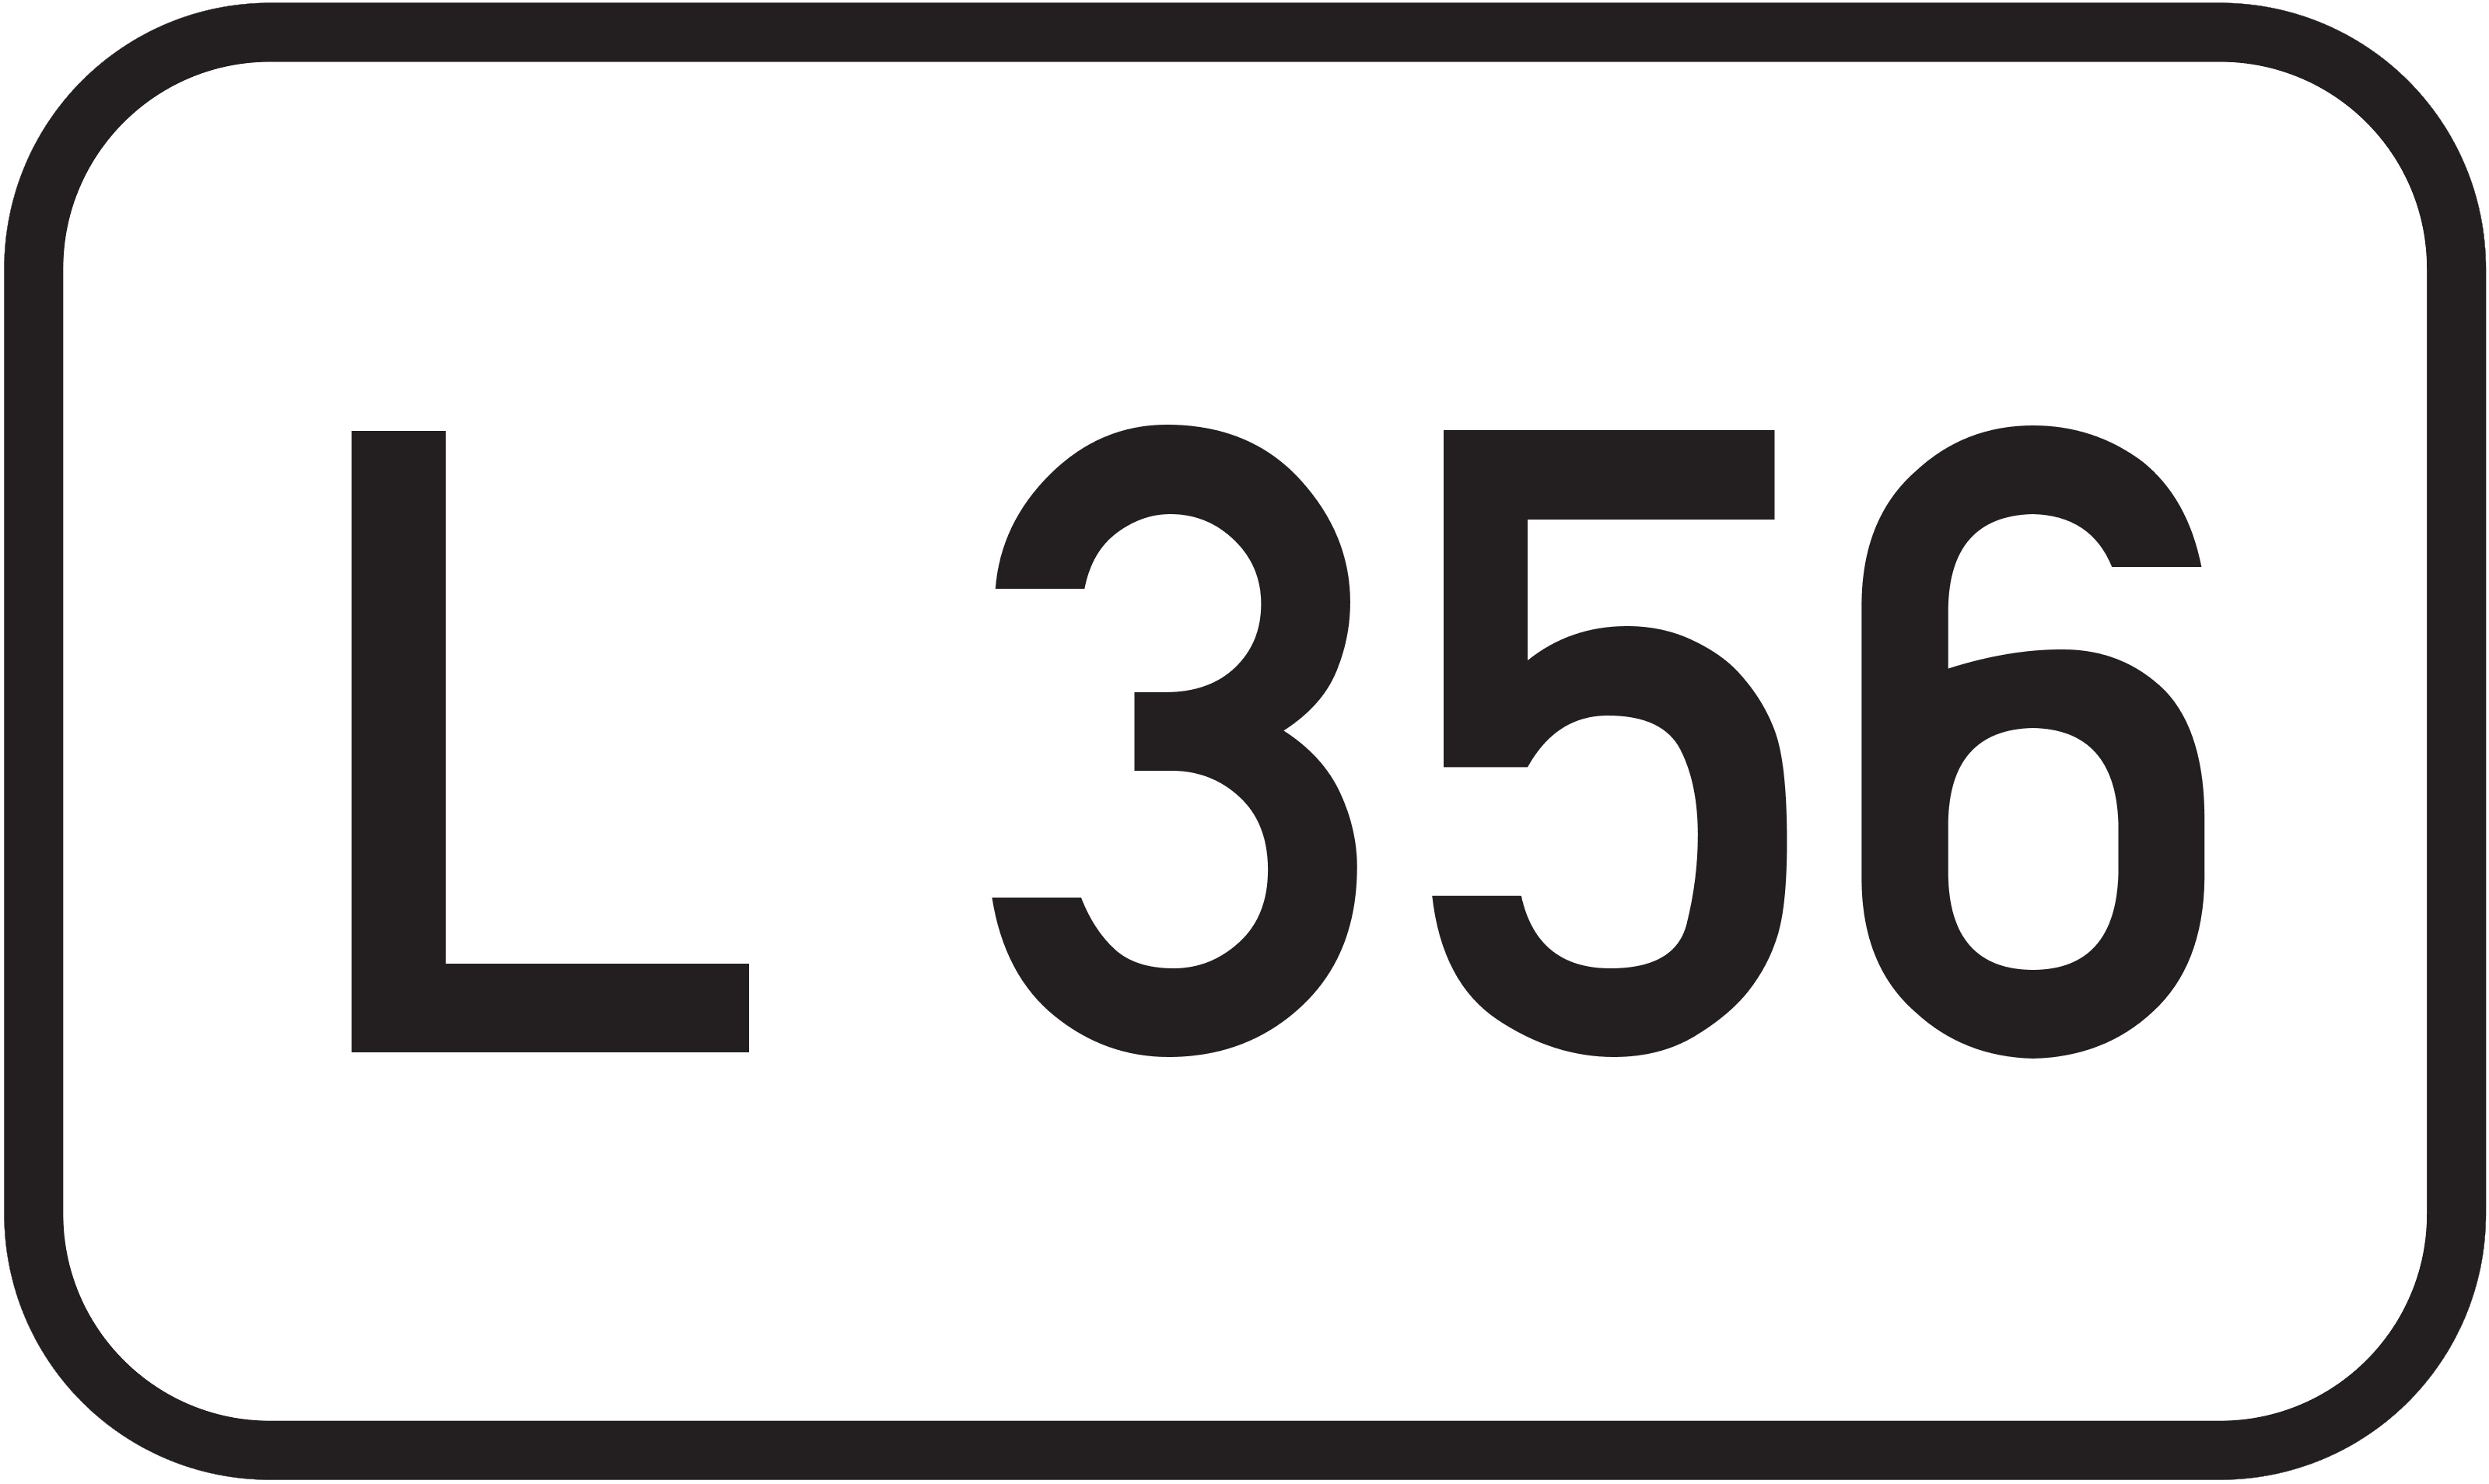 Landesstraße L 356